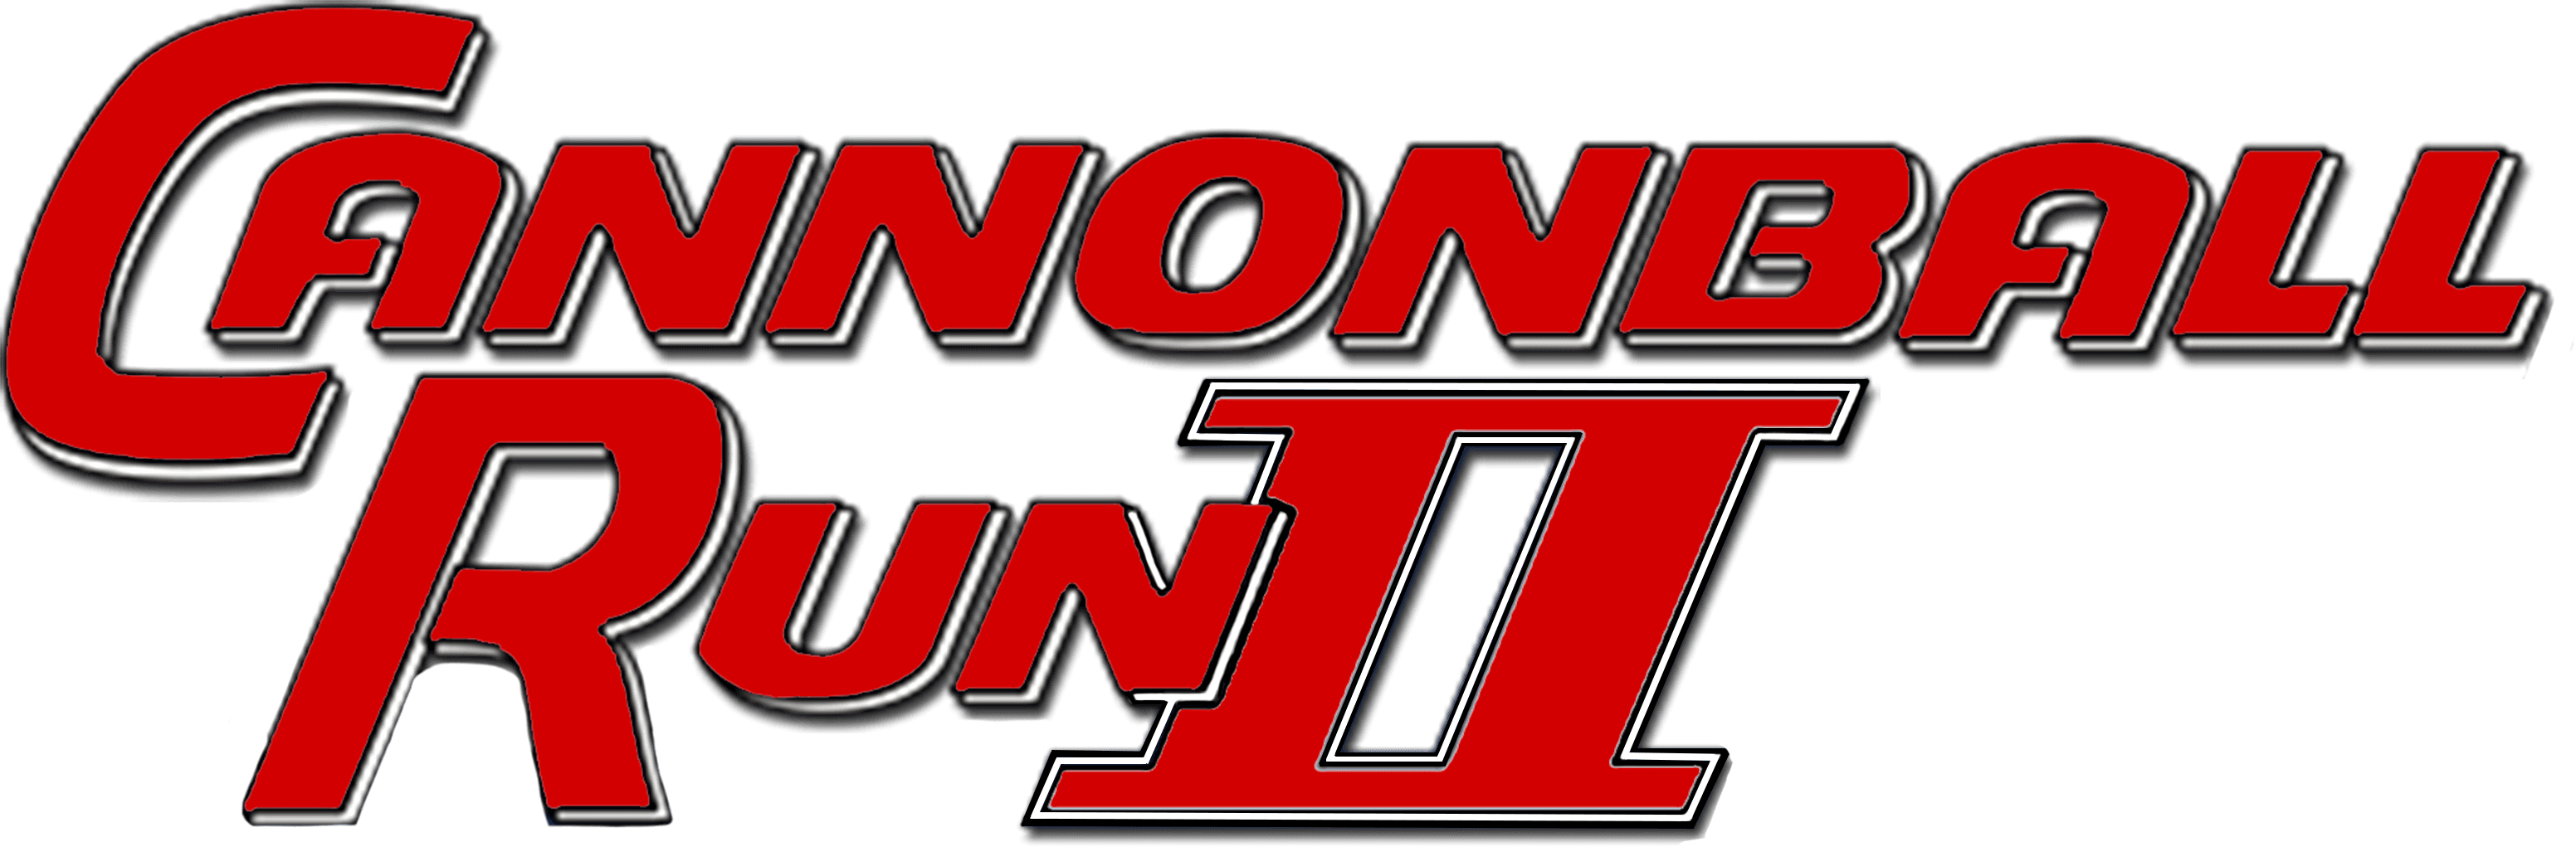 Cannonball Run II logo